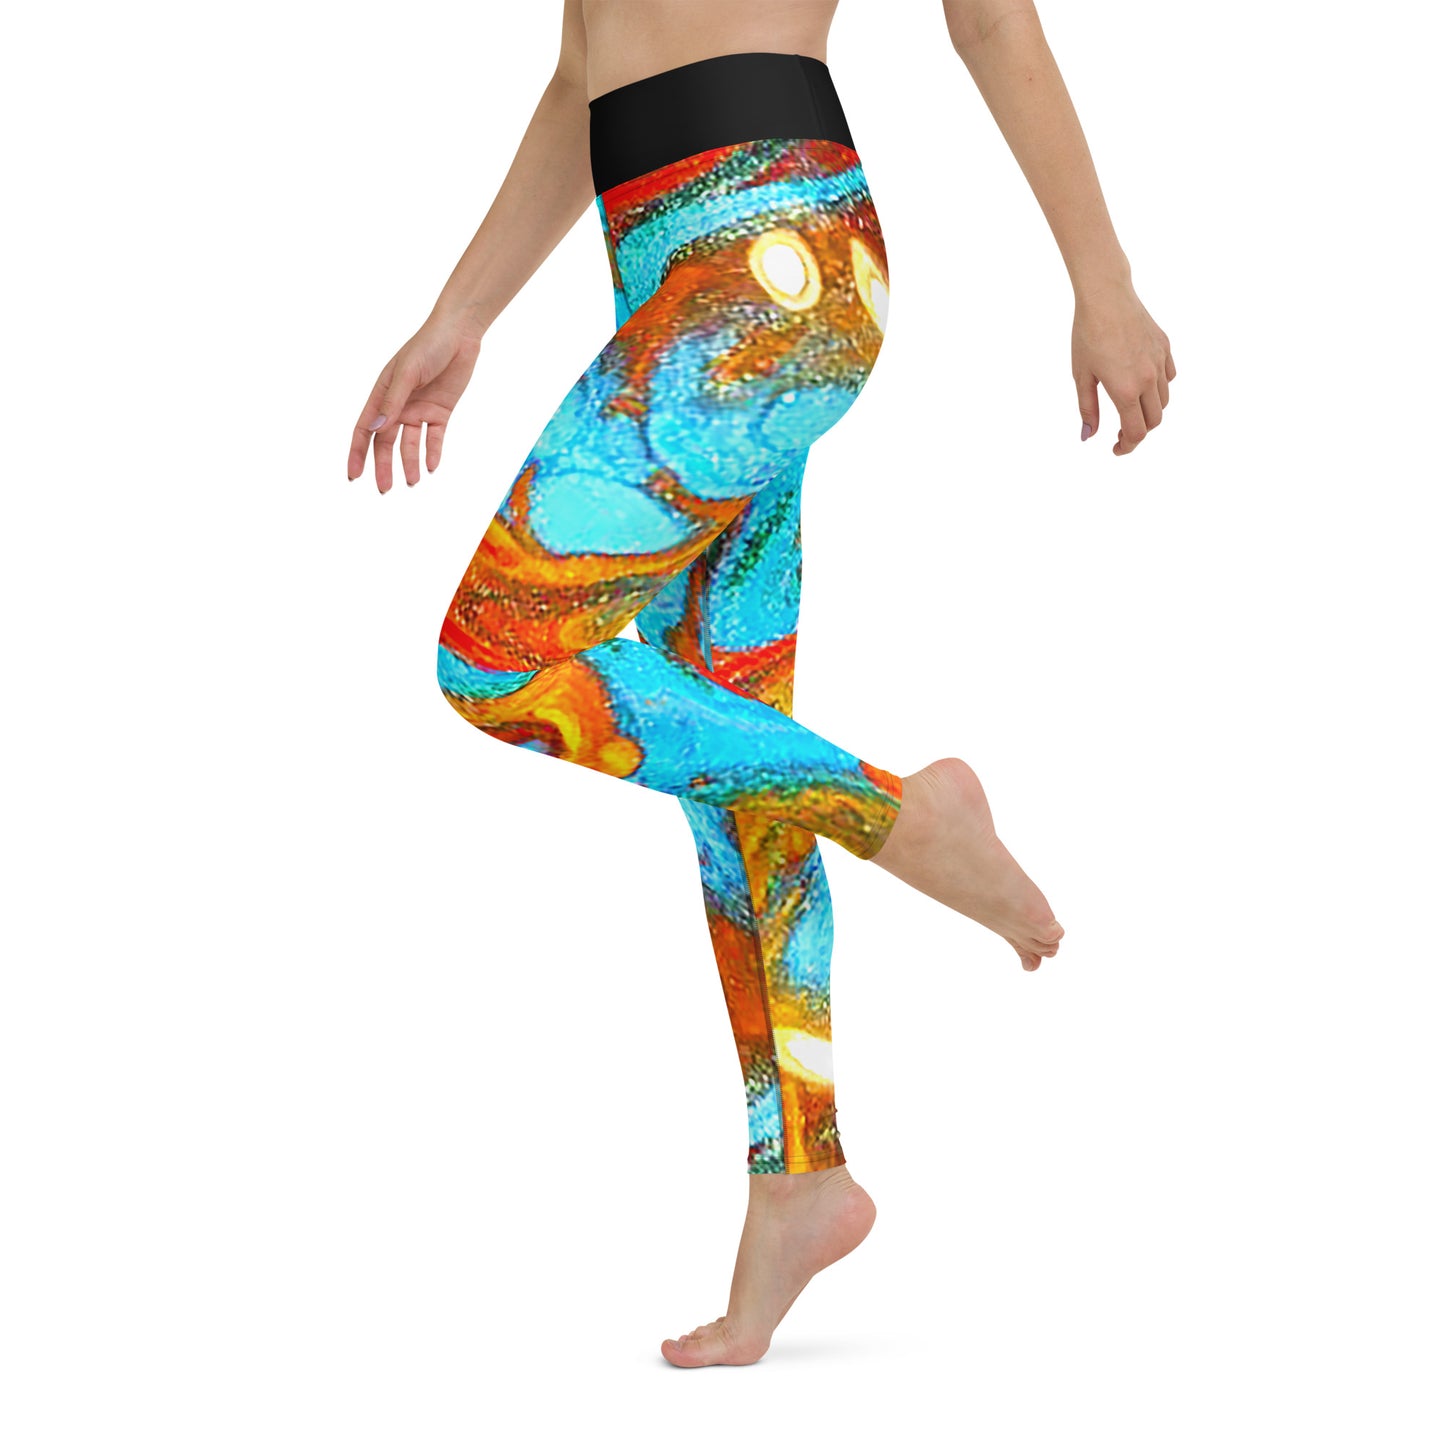 Snooty Fox Art Yoga Leggings - Rock pattern by Romero